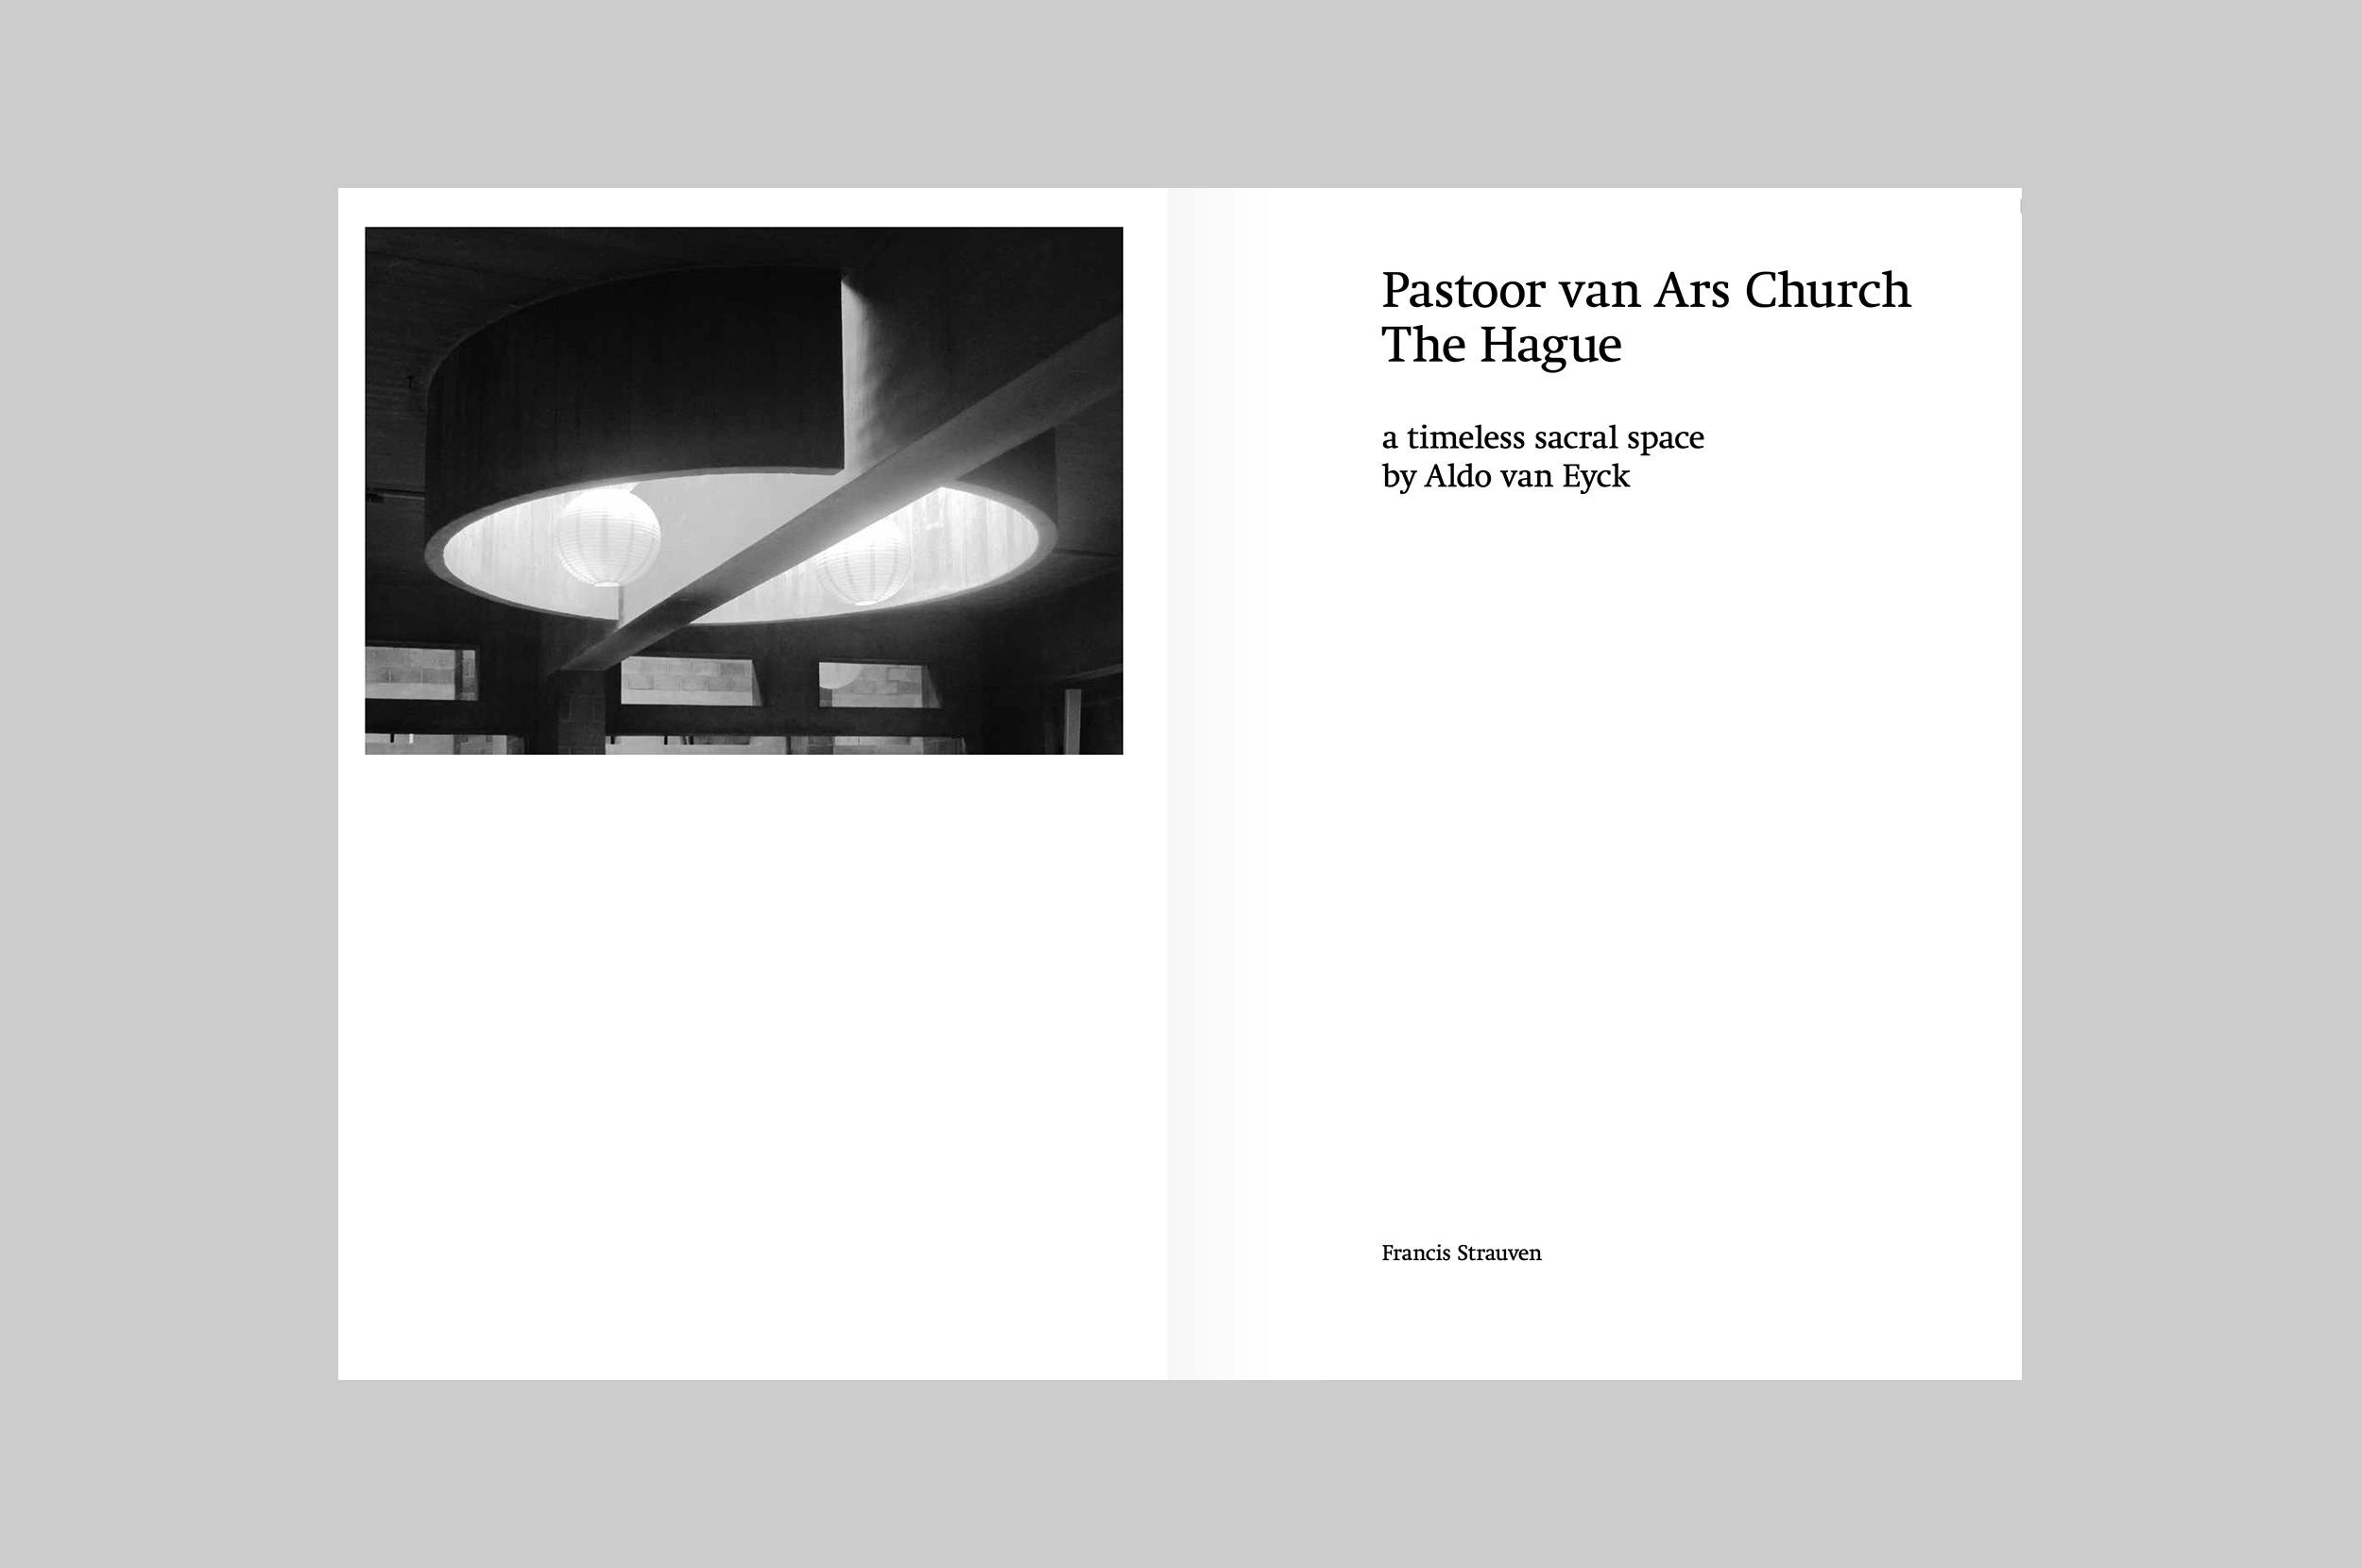 Pastoor van Ars Church, The Hague-2